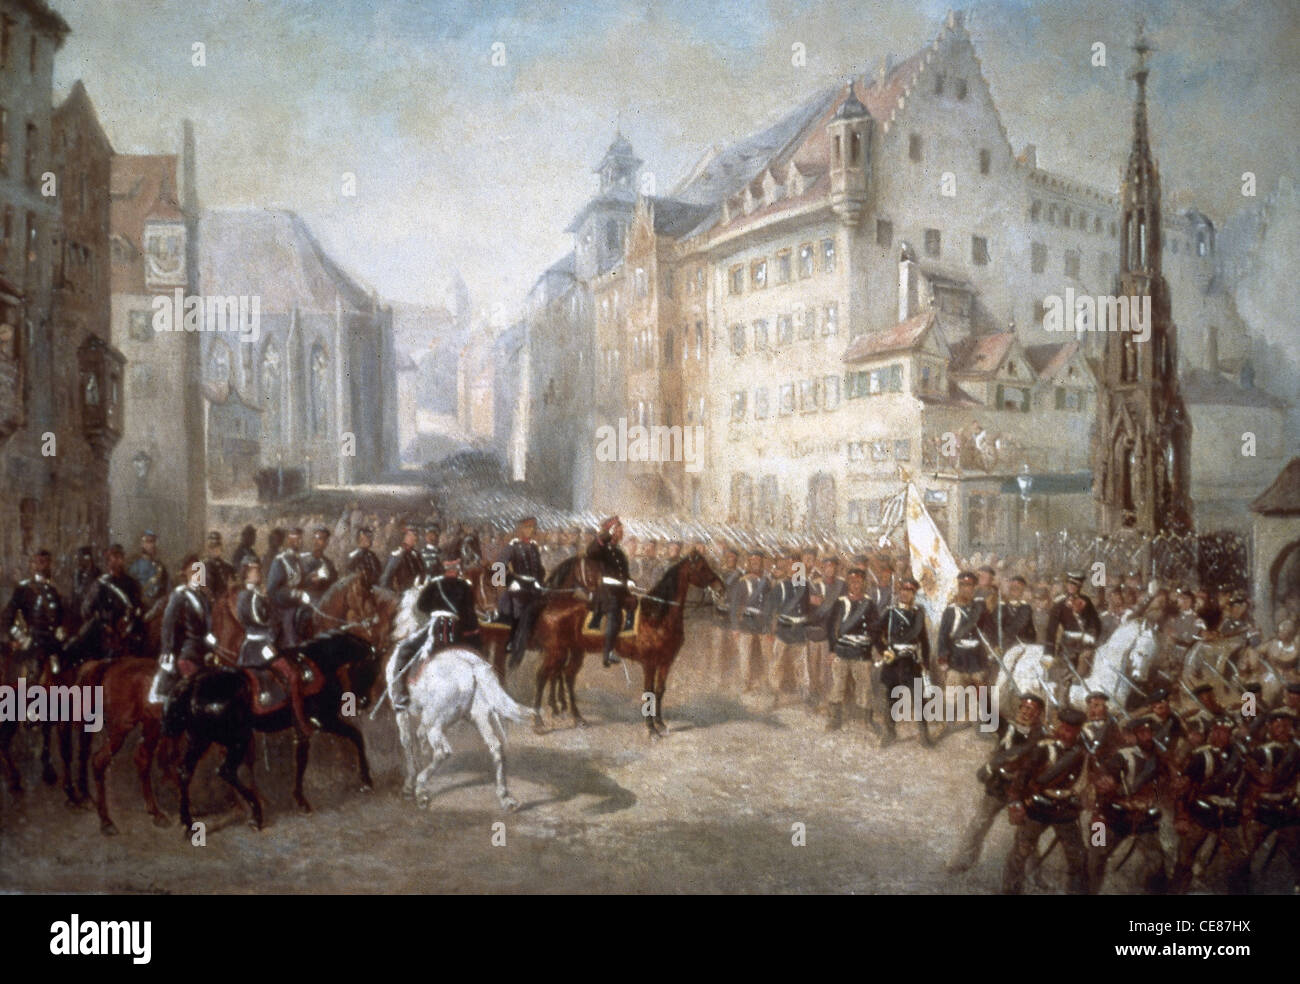 Preußisch-österreichischen Krieg. Parade der Truppen auf dem Marktplatz in Nürnberg während der Preußischen Besetzung (1866). Louis Braun. Stockfoto